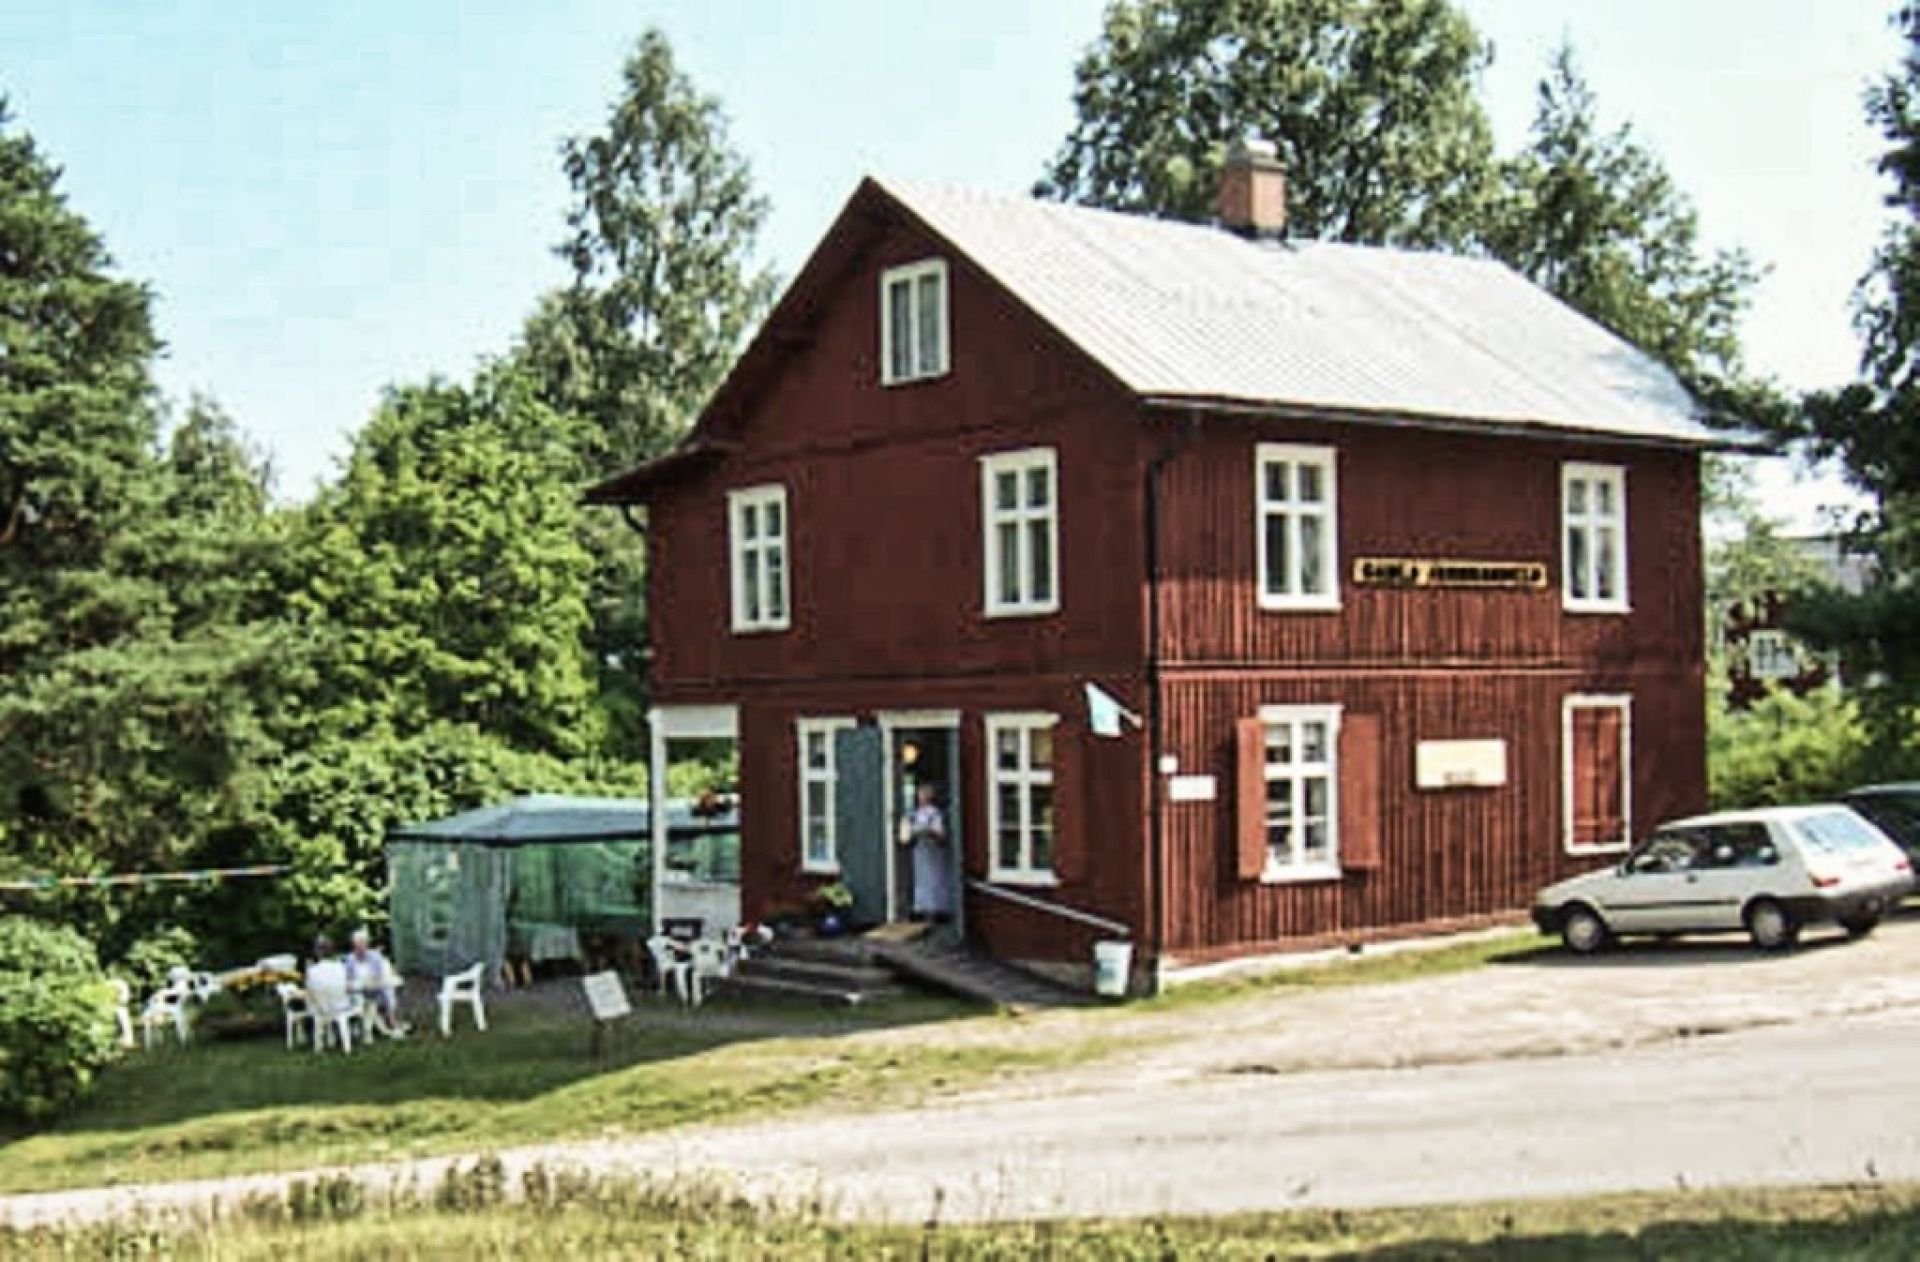 Hantverkskafé in Nysäter